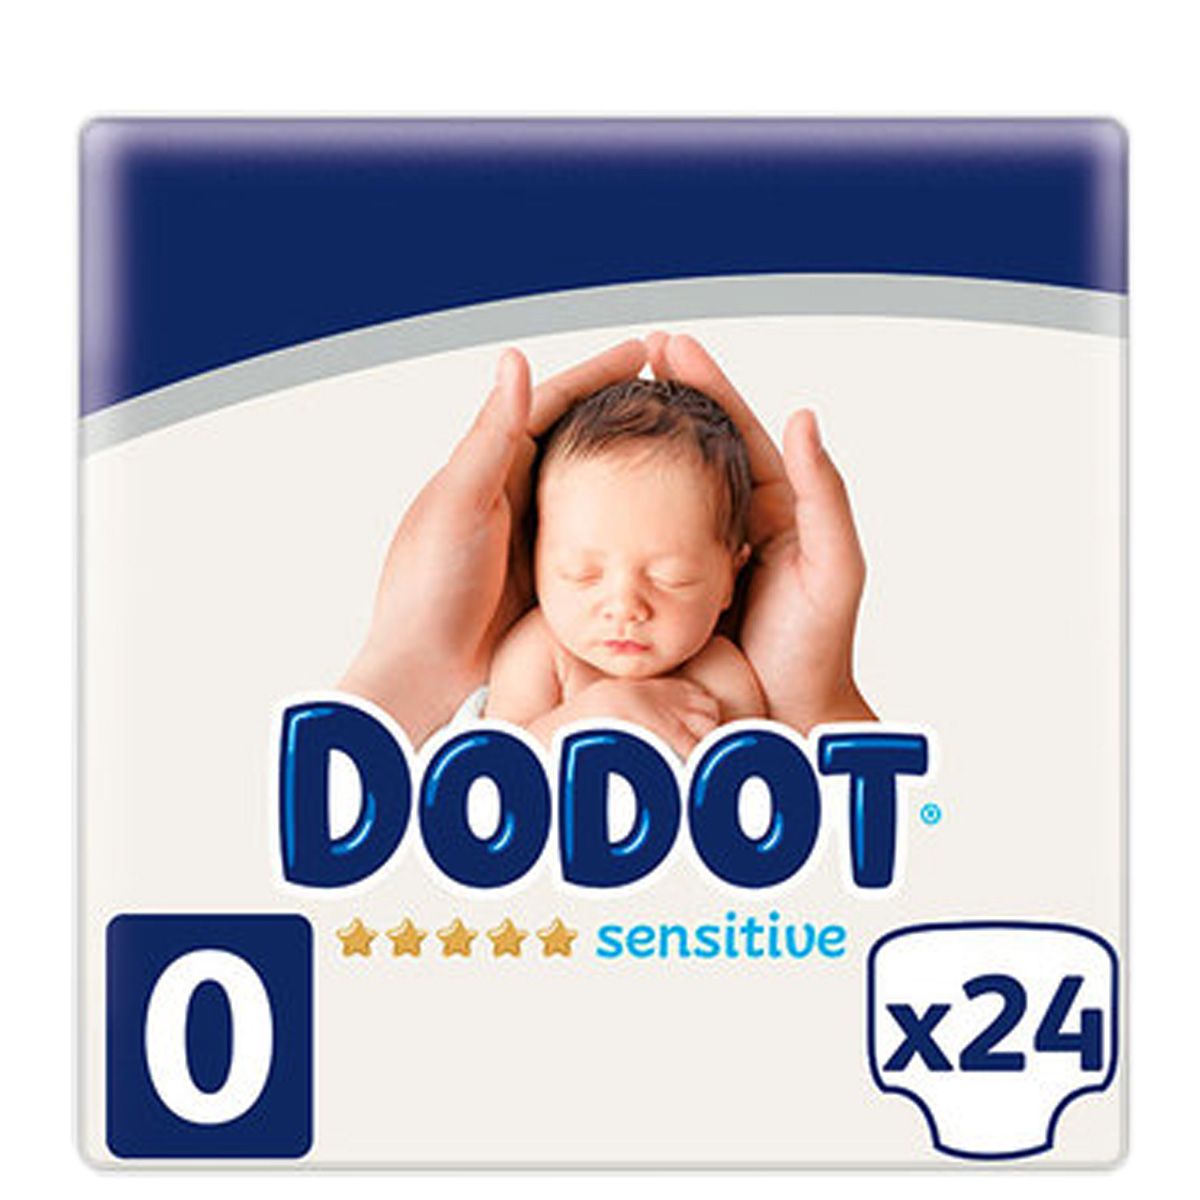 Dodot sensitive plus recién nacido (t- 0 <2,5 kg 24u) - quickfarma